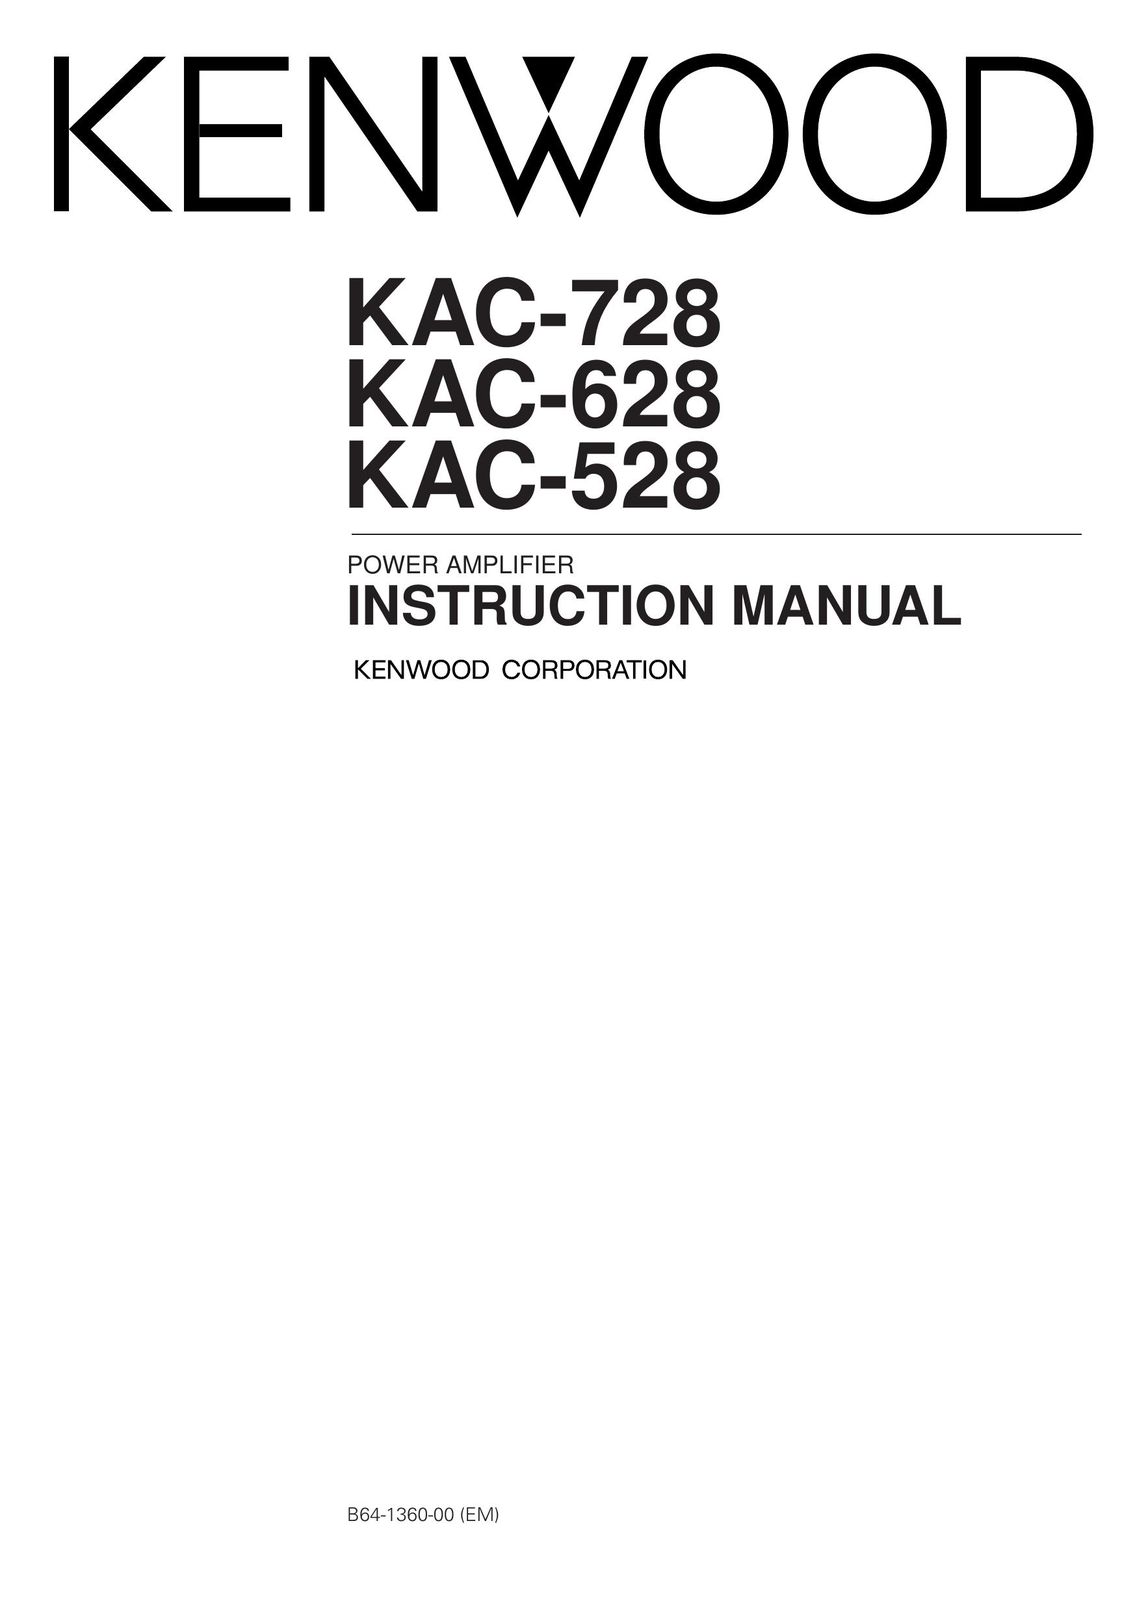 Kenwood KAC-728 Stereo Amplifier User Manual